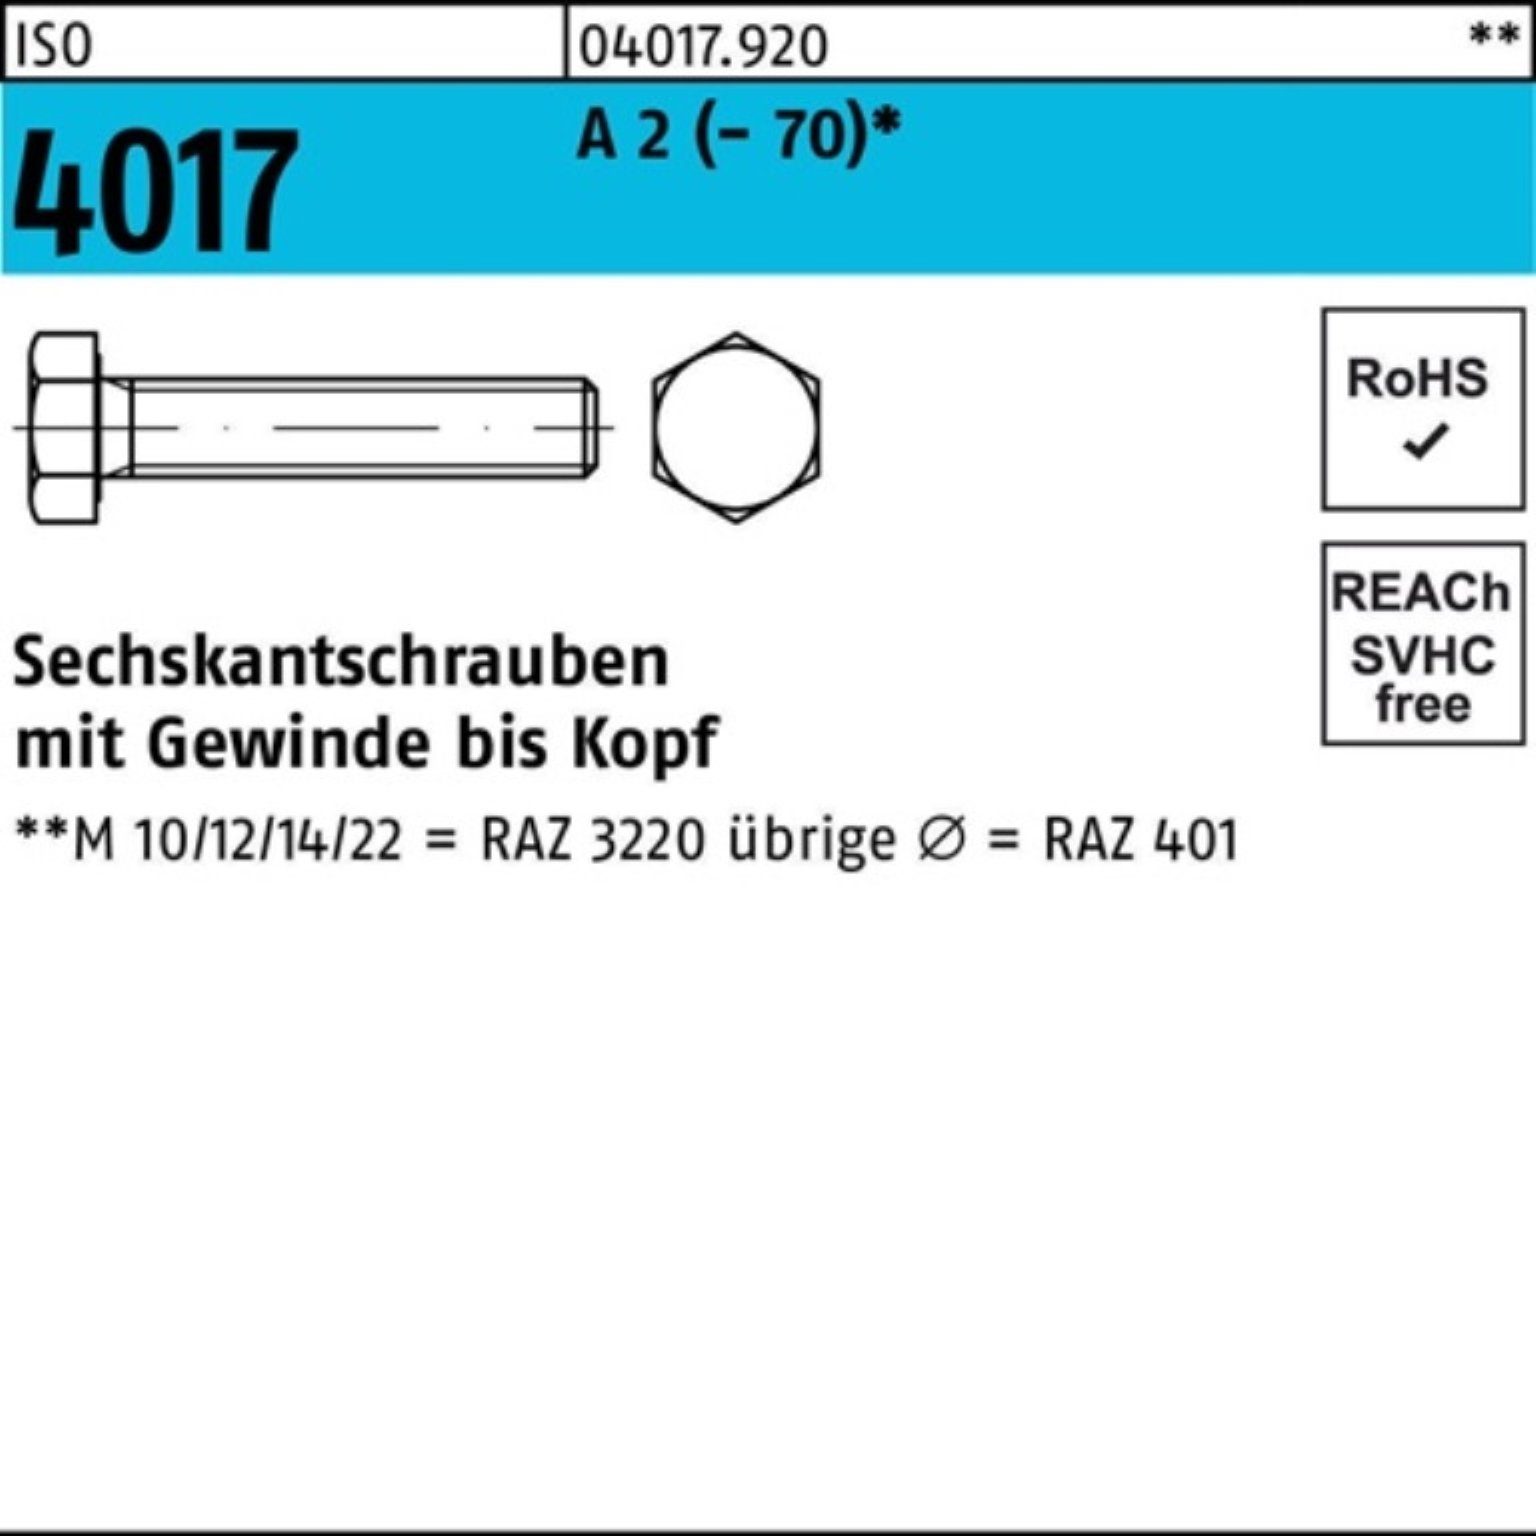 Bufab Sechskantschraube 100er Pack Sechskantschraube ISO 4017 VG M33x 80 A 2 (70) 1 Stück I